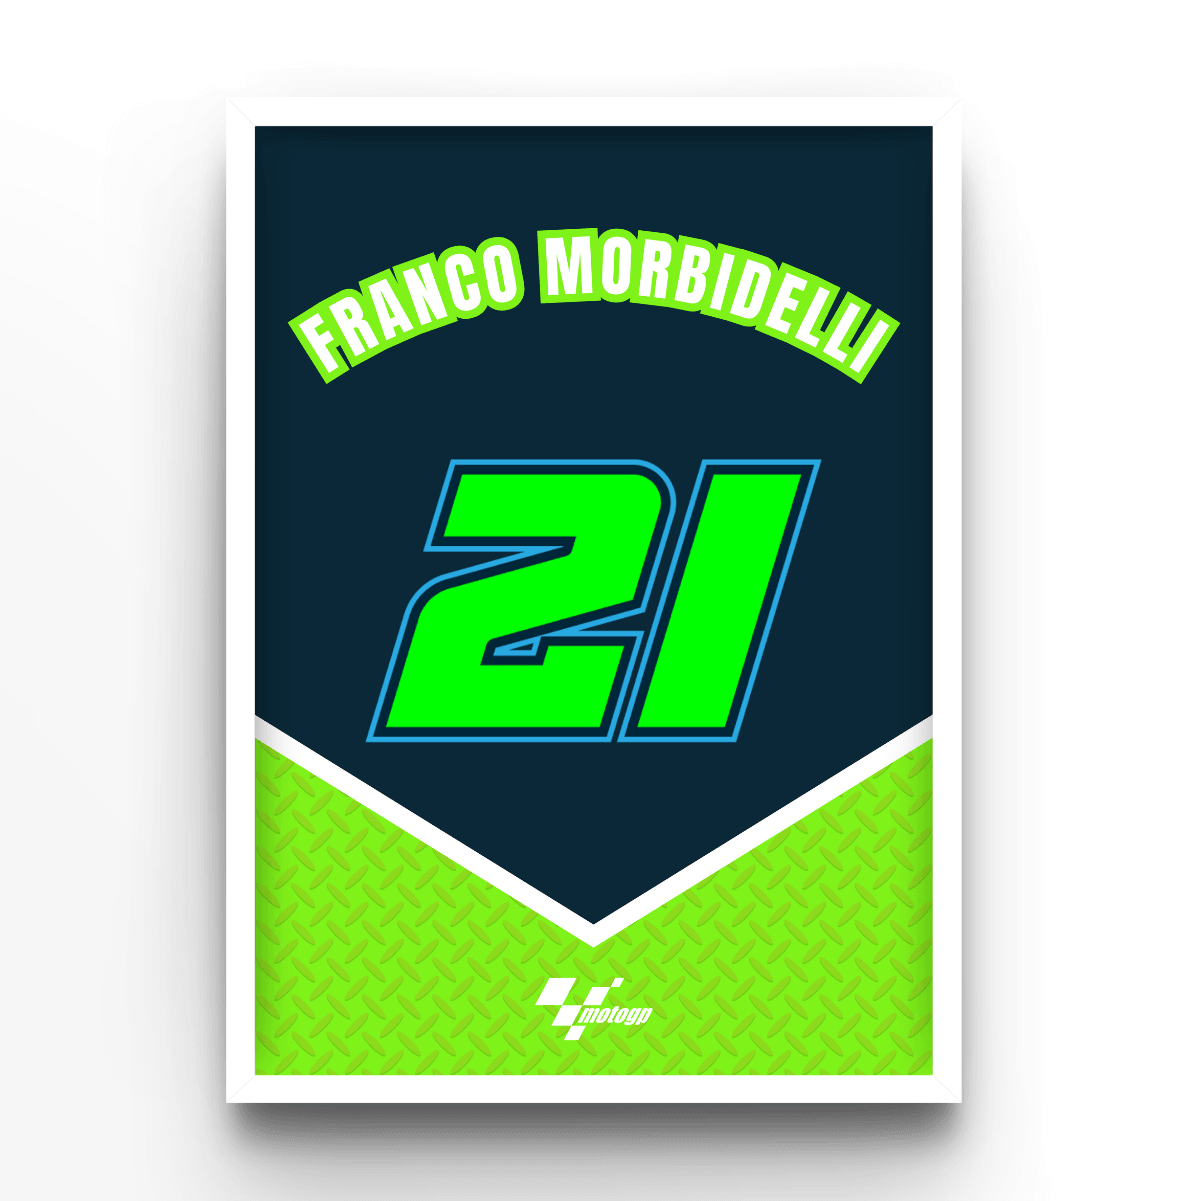 Franco Morbidelli - A4, A3, A2 Posters Base - Poster Print Shop / Art Prints / PostersBase